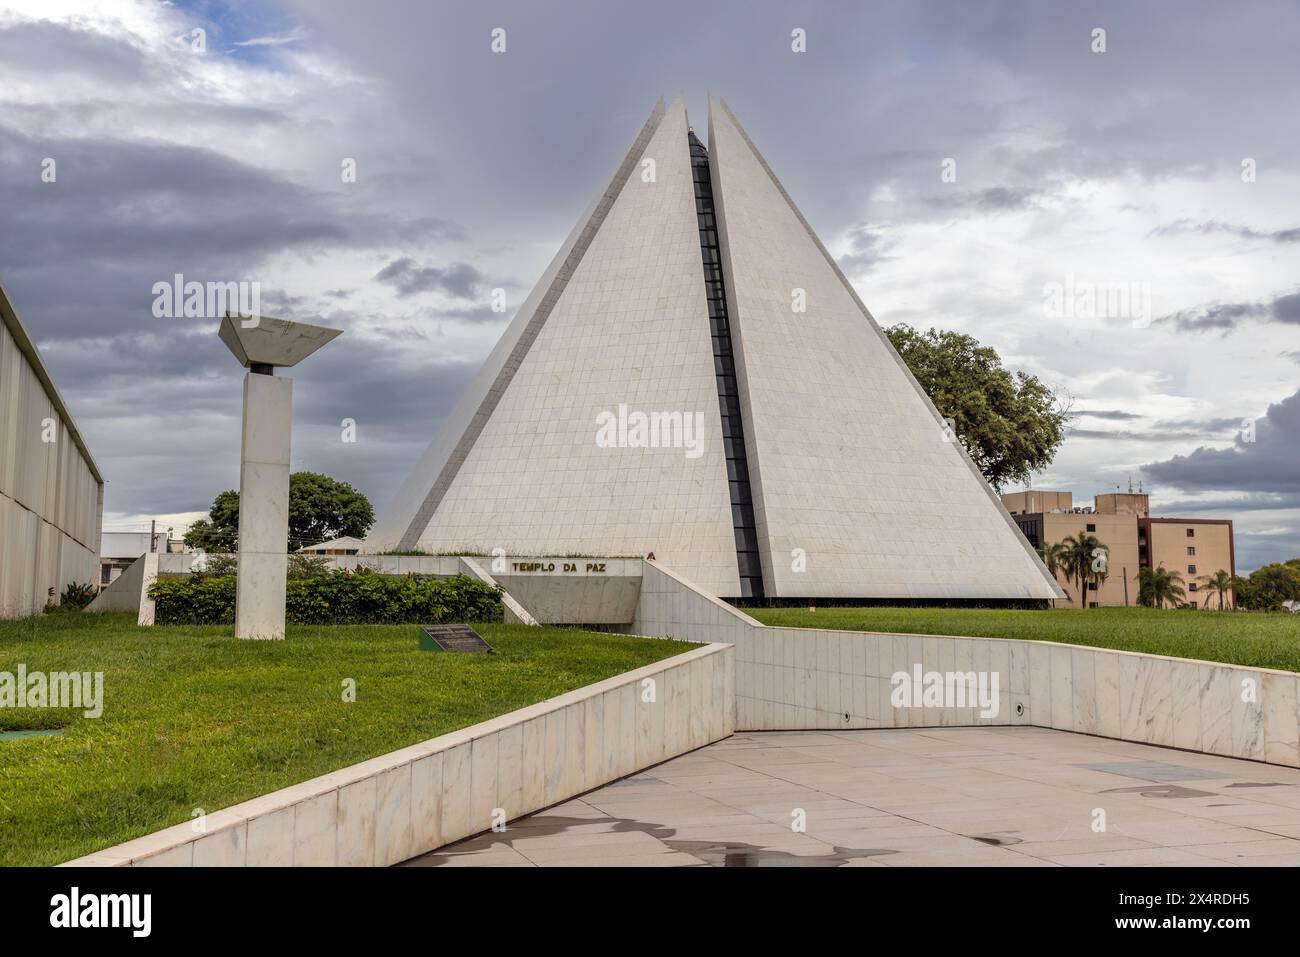 Temple of Good Will seven-sided pyramid, Templo da Boa Vontade, Brasilia, Brazil Stock Photo